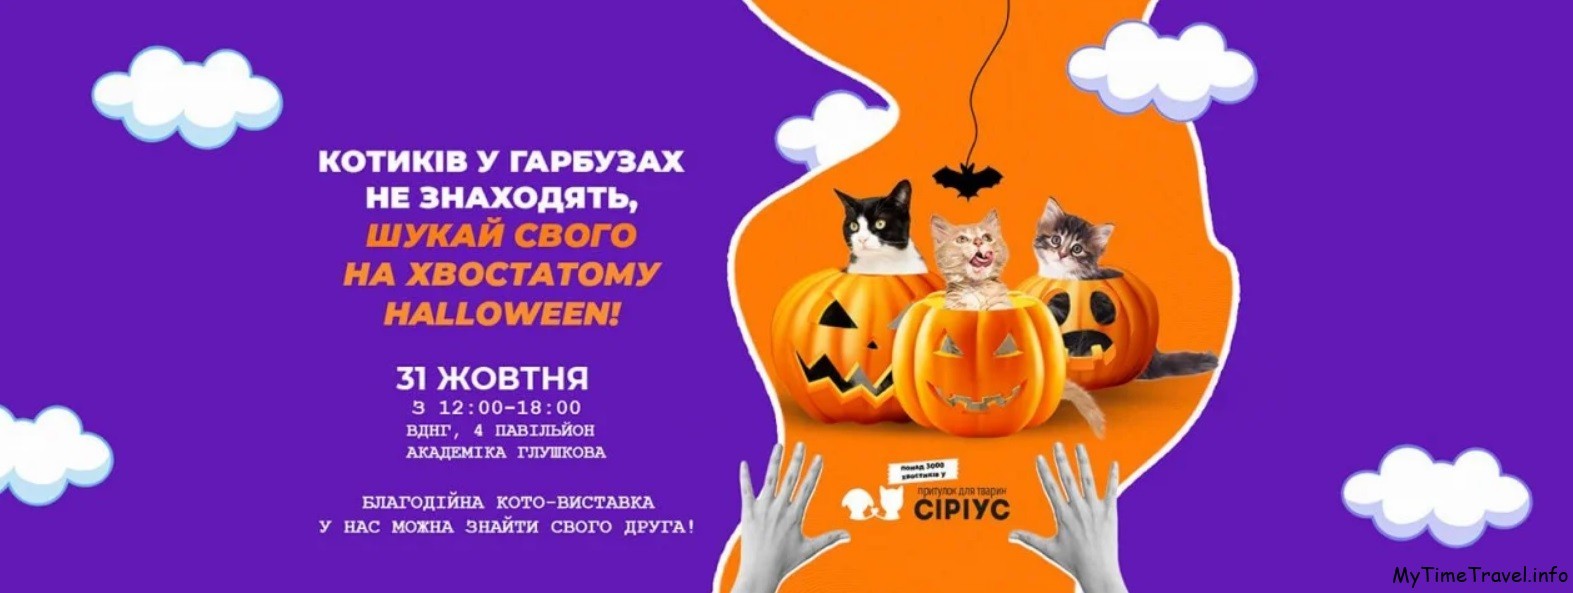 Благотворительный Хэллоуин Киев 2021